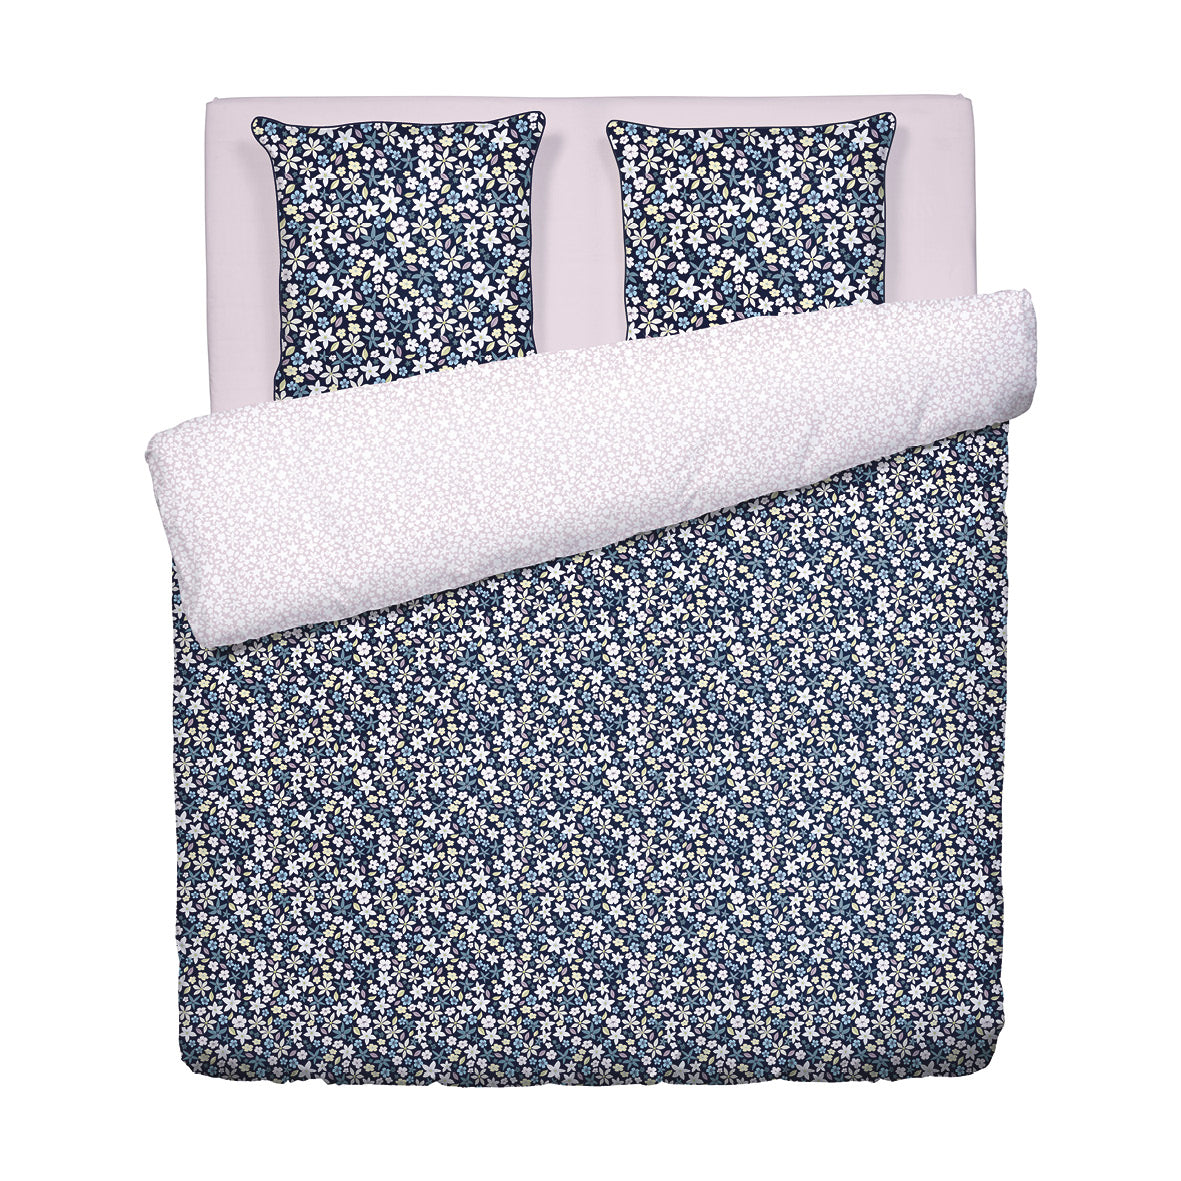 Duvet cover + pillowcase(s) cotton satin - Etoile de Printemps Blue 260 x 240 cm + 2 x (63 x 63 cm)